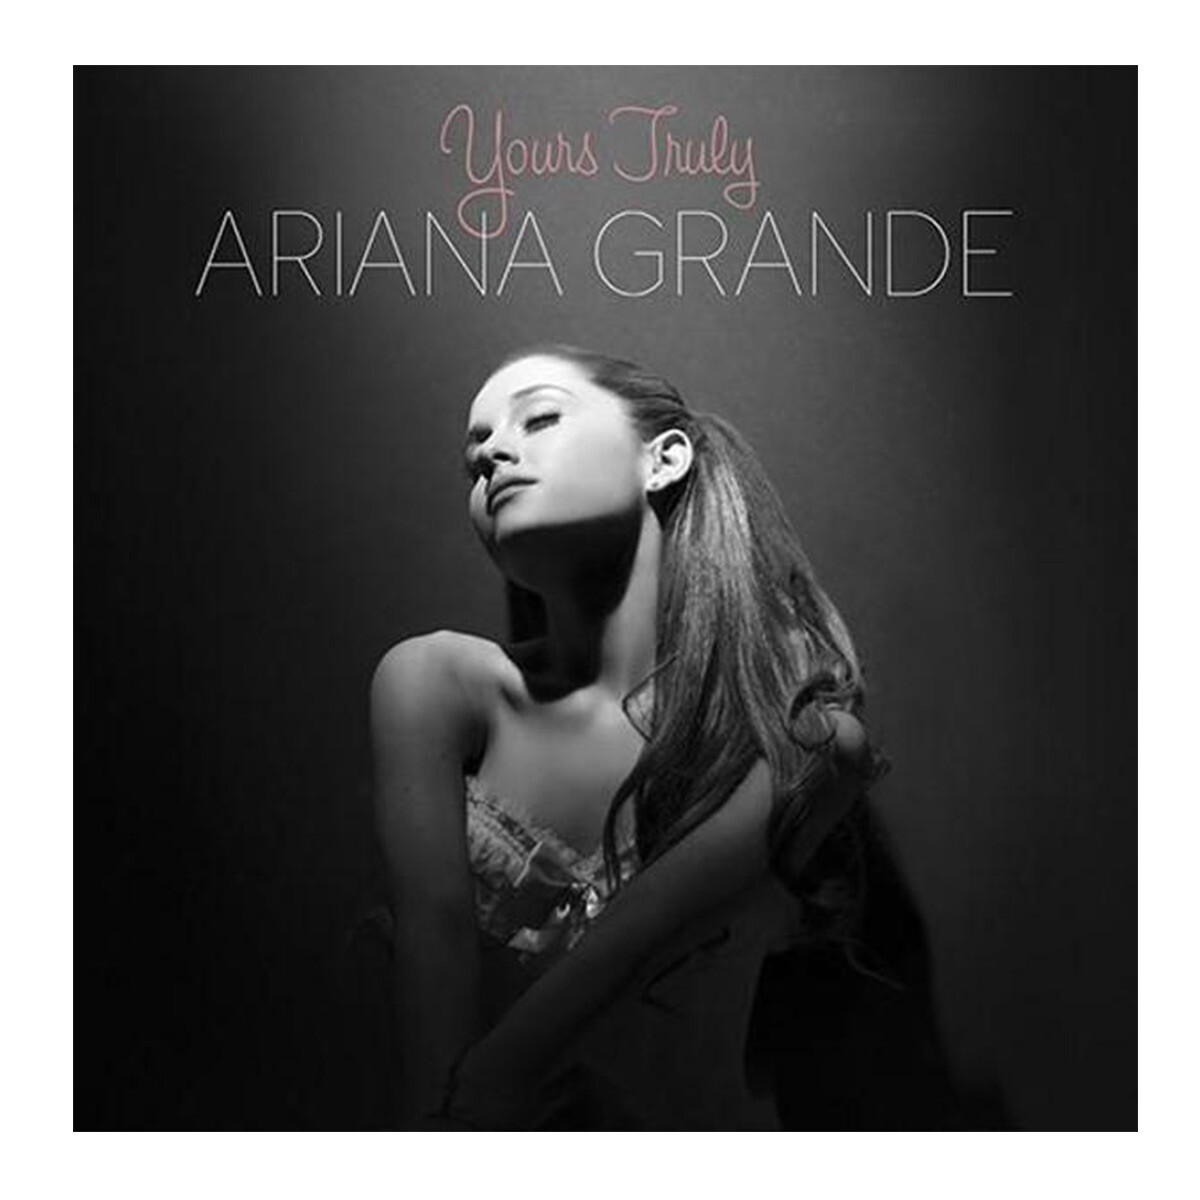 CD Ariana Grande - Mi todo de segunda mano por 10 EUR en Torres